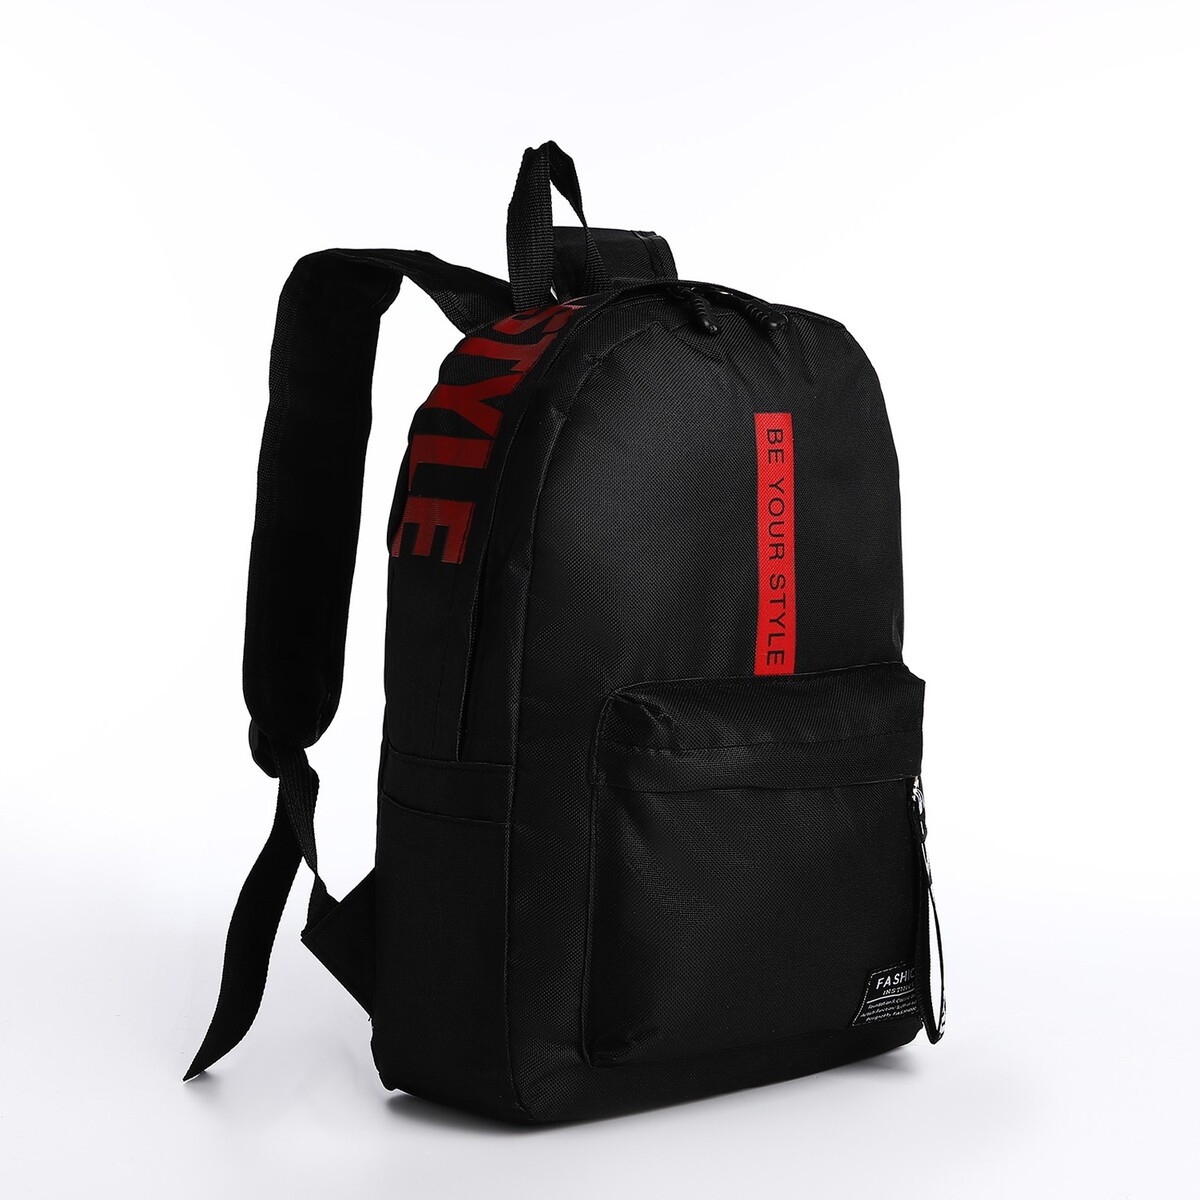 Рюкзак на молнии, наружный карман, 2 боковых кармана, цвет черный/красный рюкзак отдел на молнии наружный карман 2 боковых кармана синий